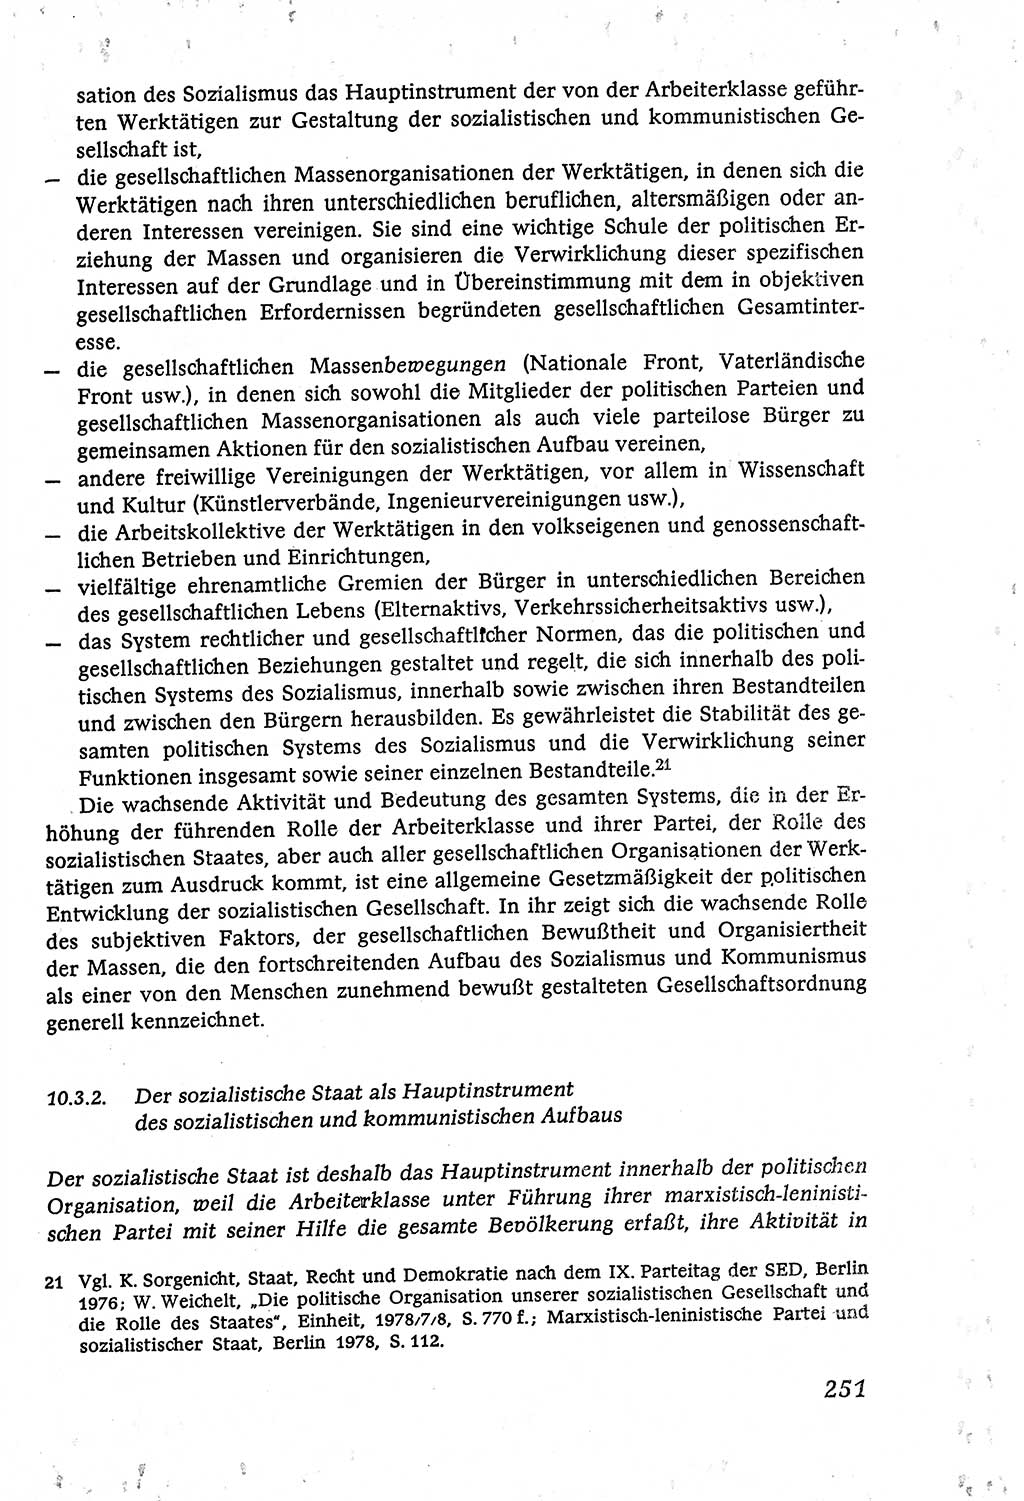 Marxistisch-leninistische (ML) Staats- und Rechtstheorie [Deutsche Demokratische Republik (DDR)], Lehrbuch 1980, Seite 251 (ML St.-R.-Th. DDR Lb. 1980, S. 251)